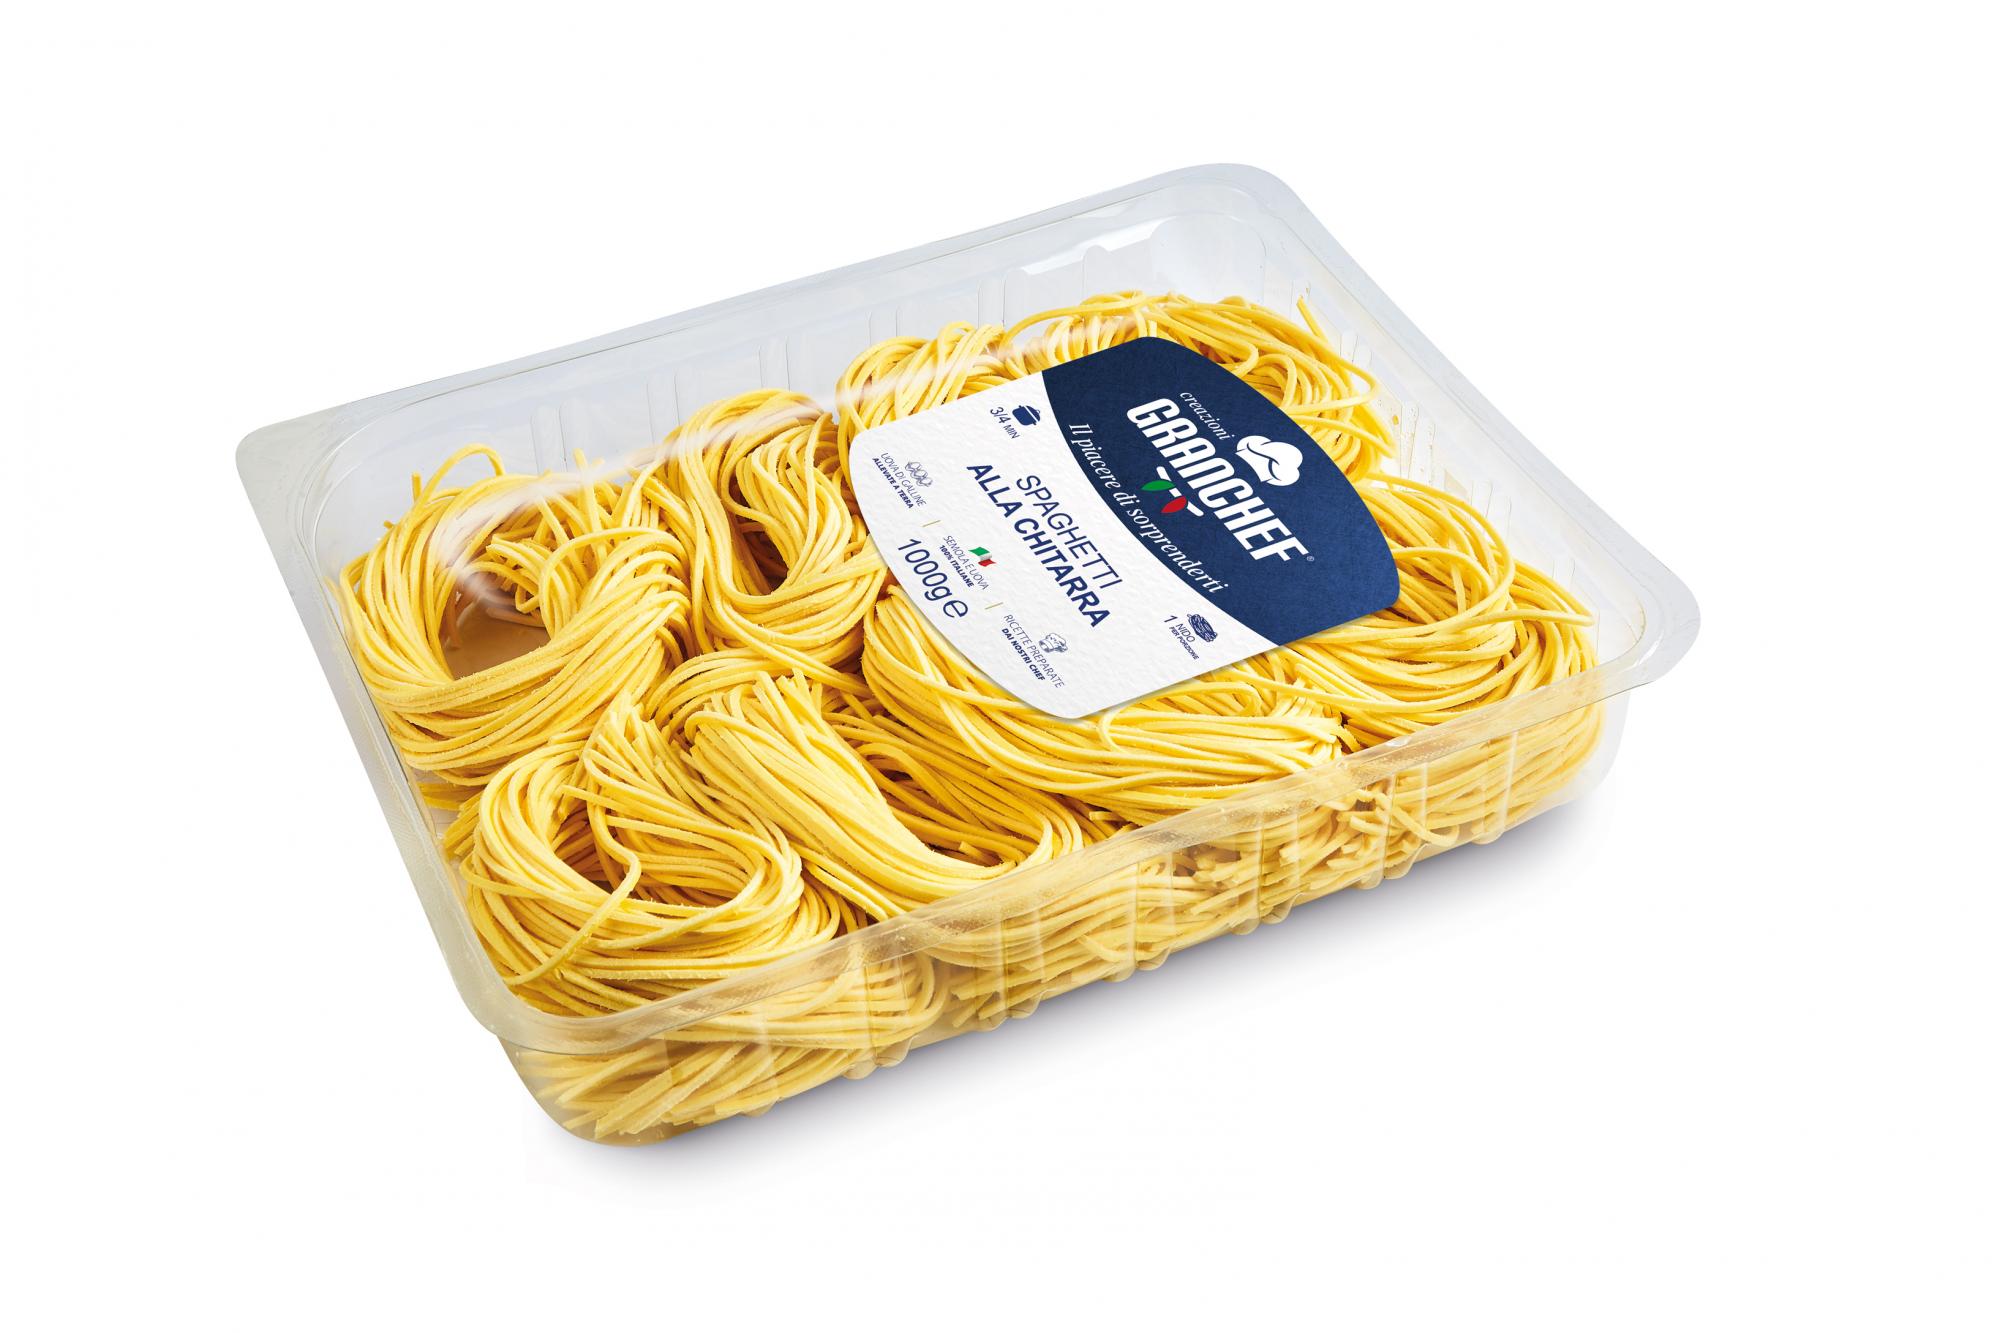 FONTANETO - Spaghetti alla chitarra MAP 1 kg - TMC 14 giorni -  3 minuti di cottura - 3 mm - in ATM